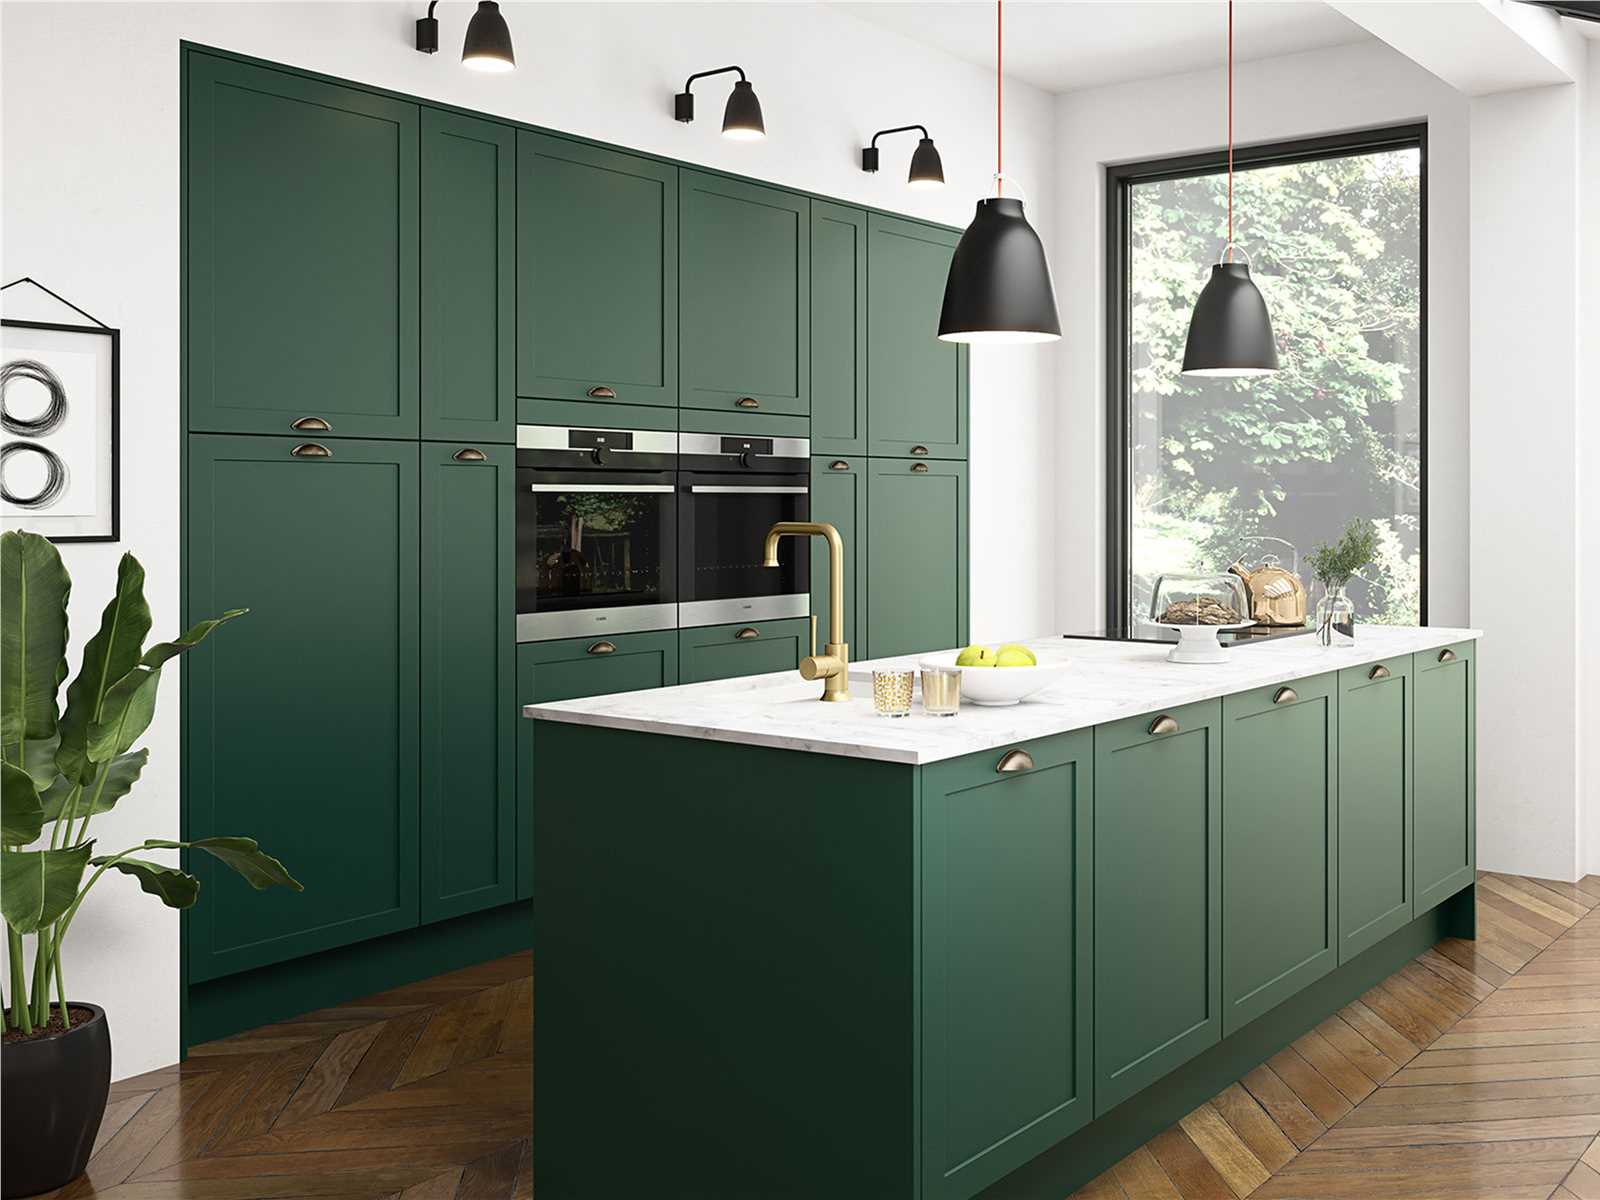 5 ترکیب رنگ کابینت آشپزخانه برای سال 2021